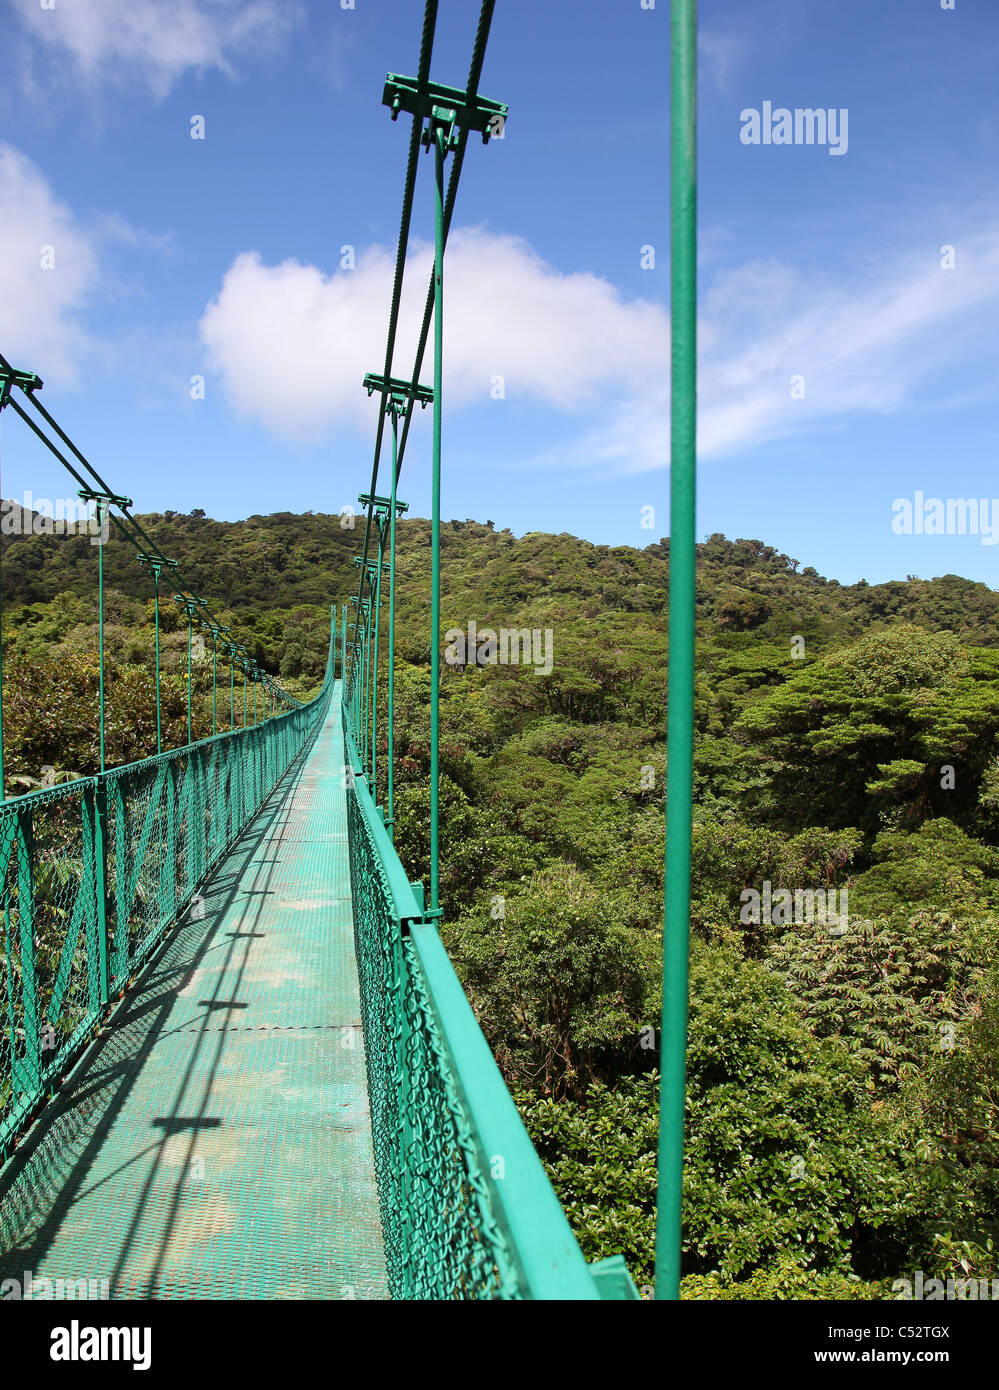 Un des ponts suspendus au-dessus de la canopée des arbres de la forêt nuageuse de Monteverde Cloud Forest, Costa Rica, Amérique centrale Banque D'Images